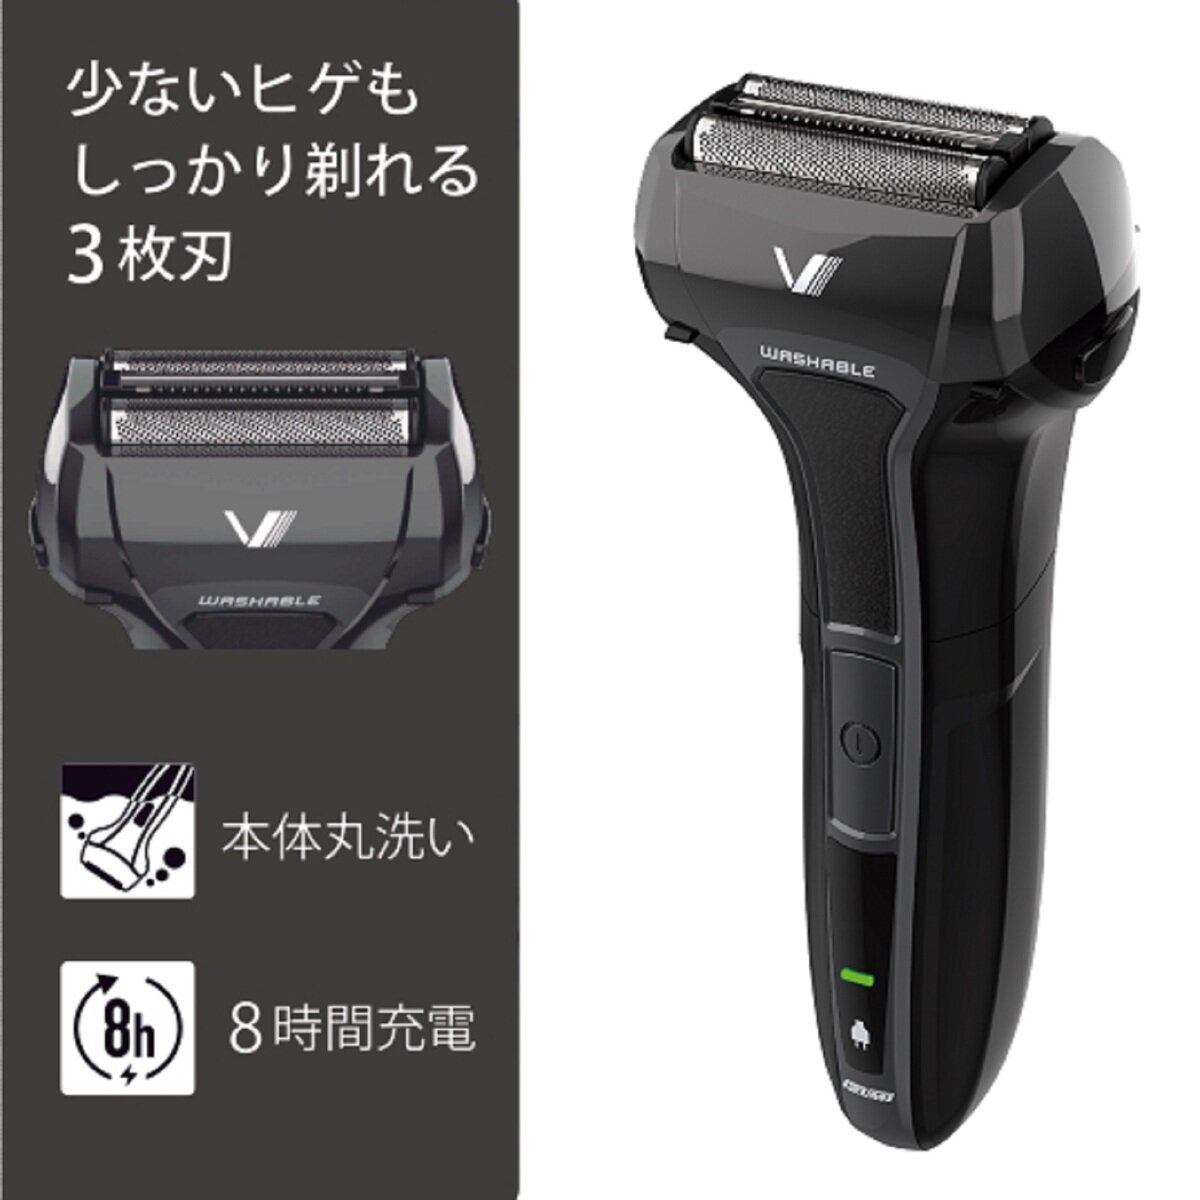 マクセルイズミ シェーバー ソリッドシリーズ IZF-V531-(K) Costco Japan